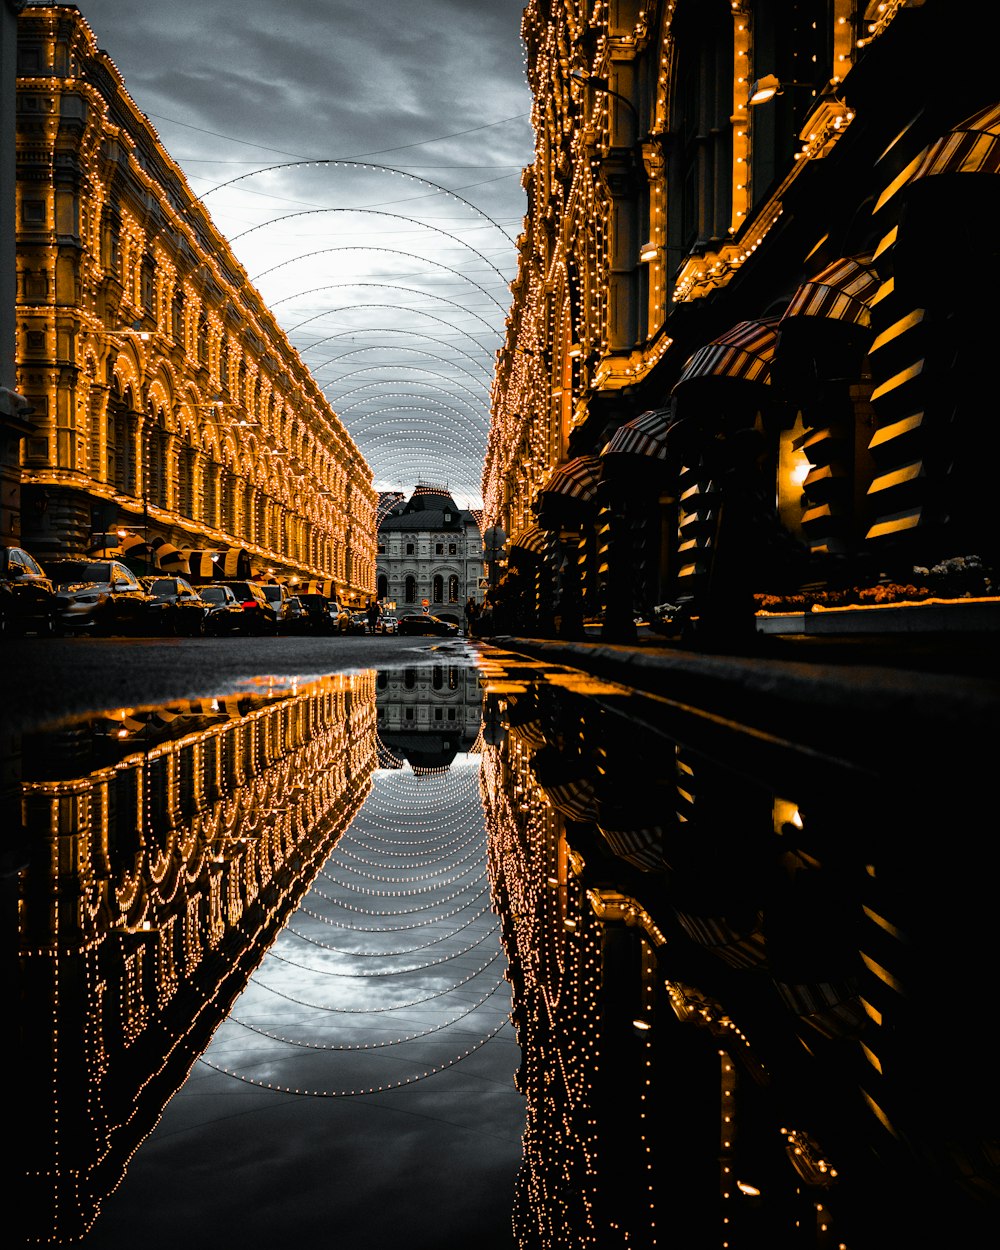 De l’eau sur une route goudronnée avec le reflet de bâtiments entièrement décorés sous un ciel nuageux